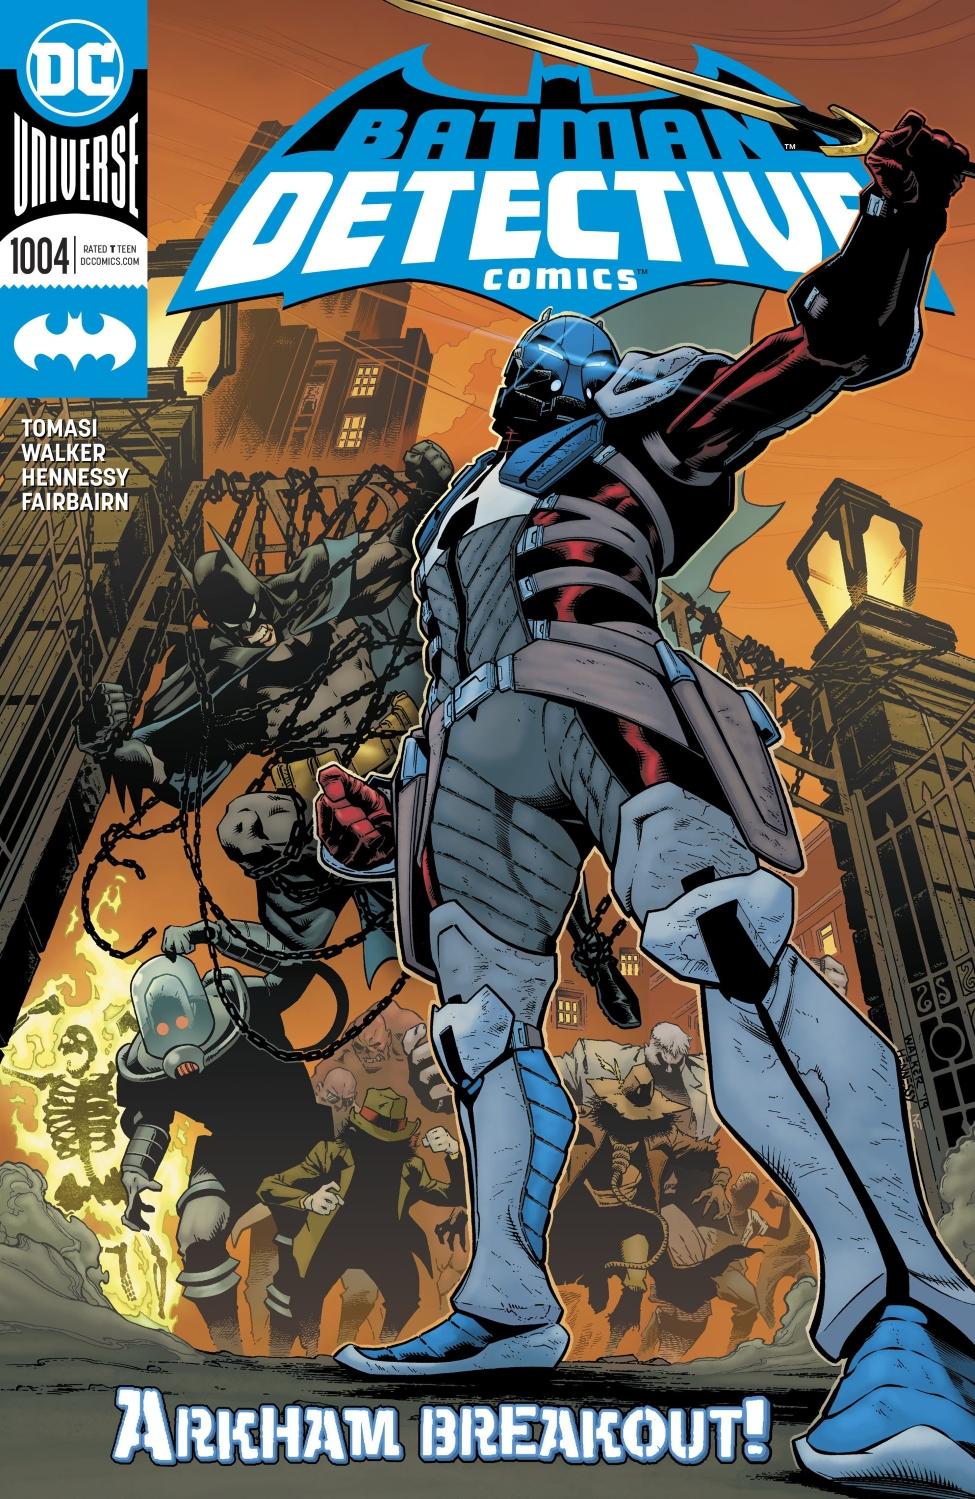 Detective Comics Vol. 1 #1004